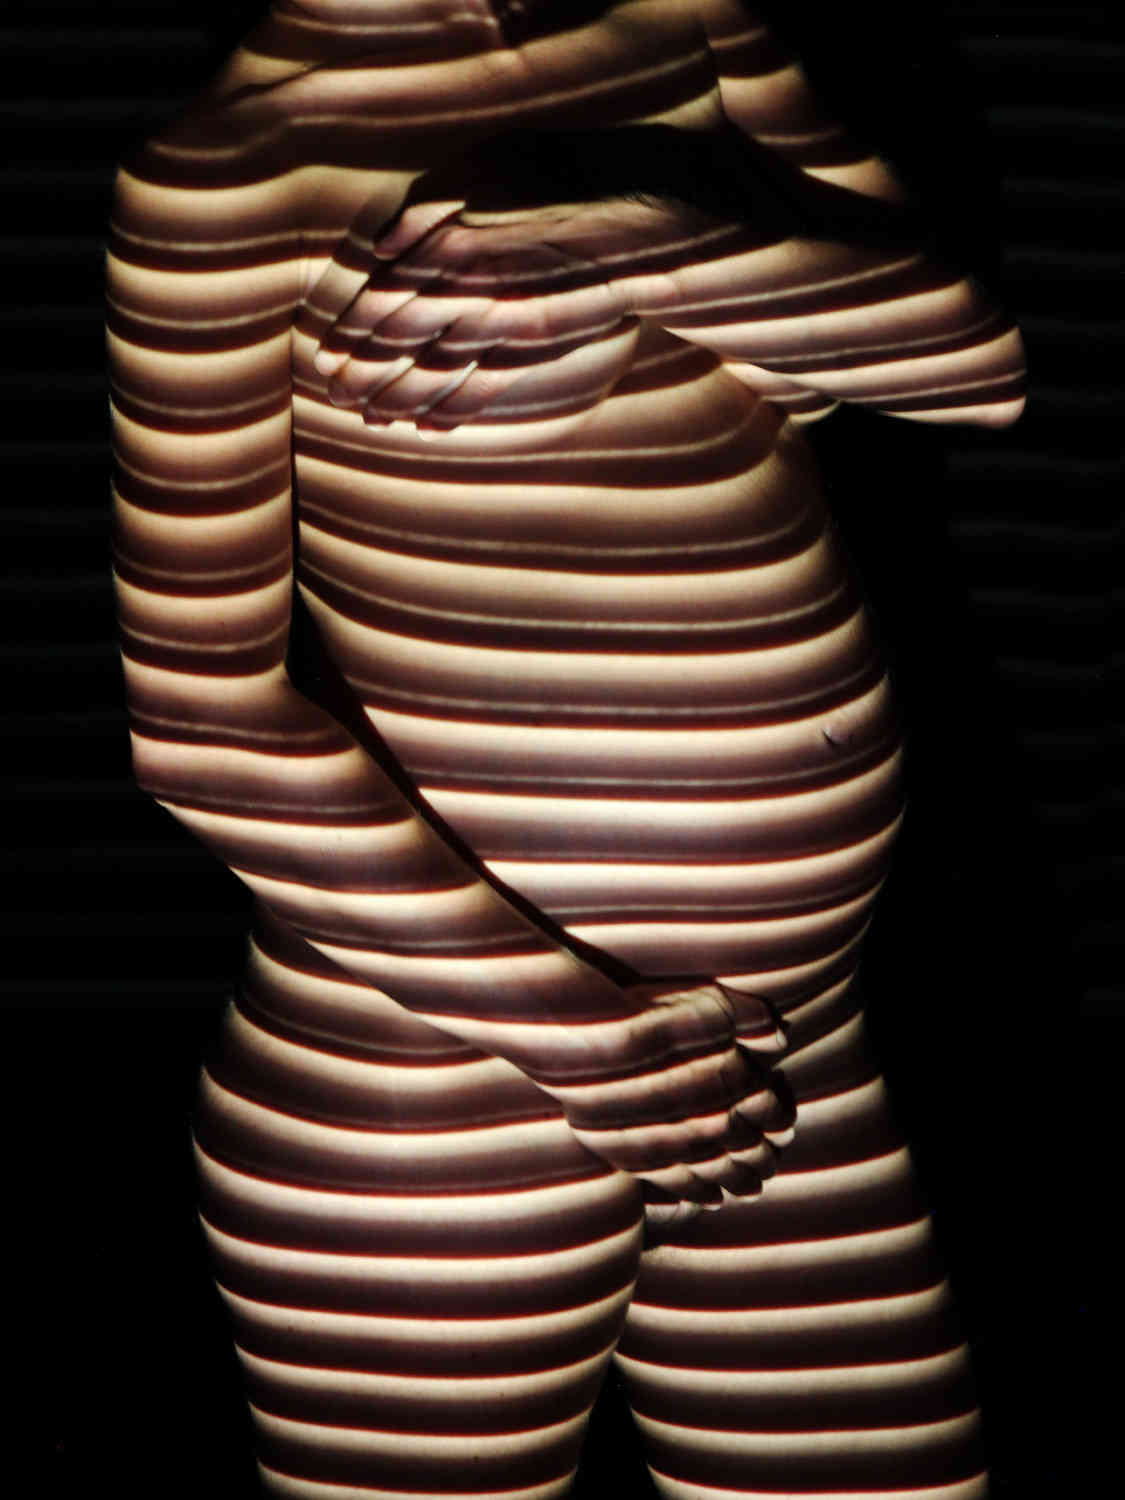 Aktfoto in Farbe - Projektion: Babybauch, Schwangerschaft